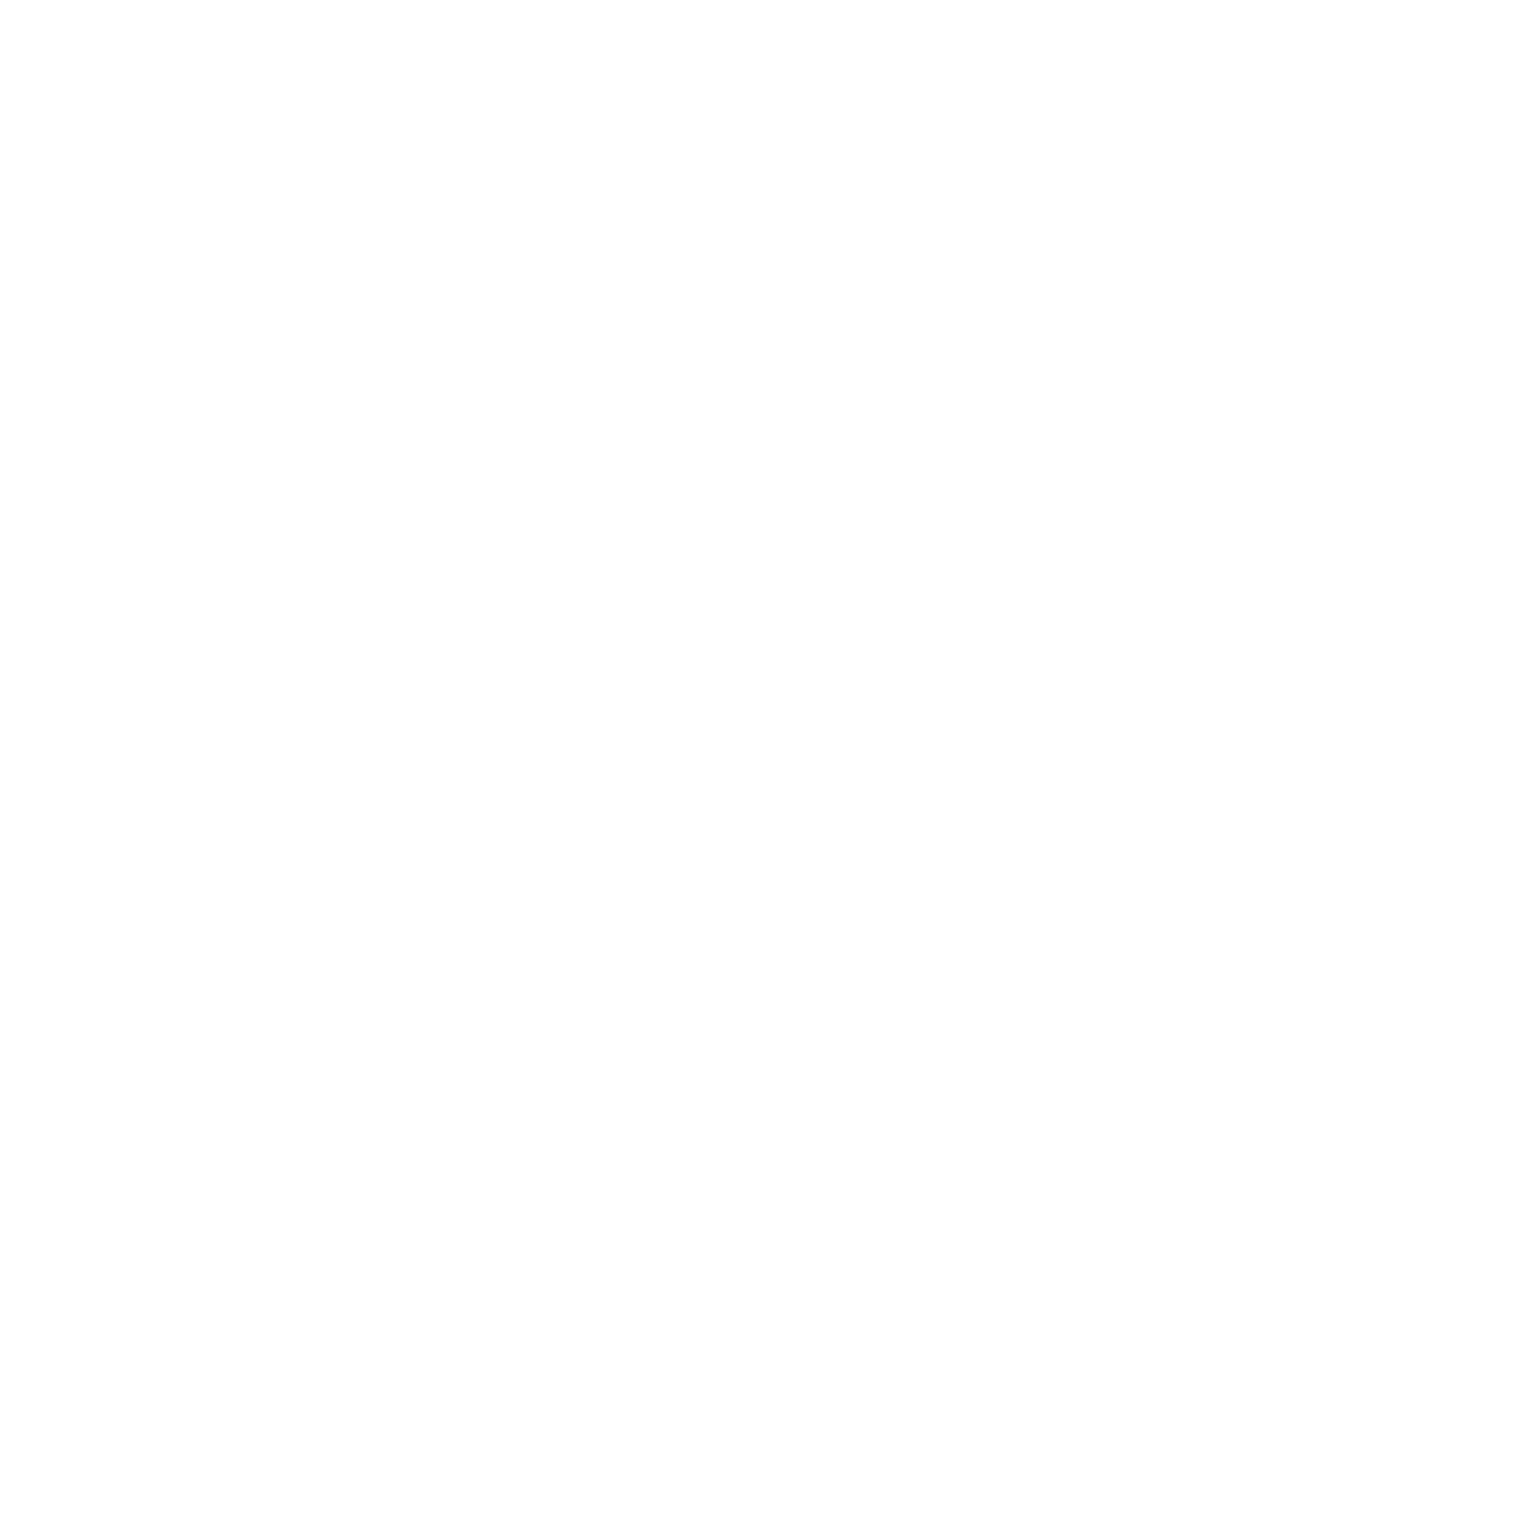 DEUTZ logo grand pour les fonds sombres (PNG transparent)